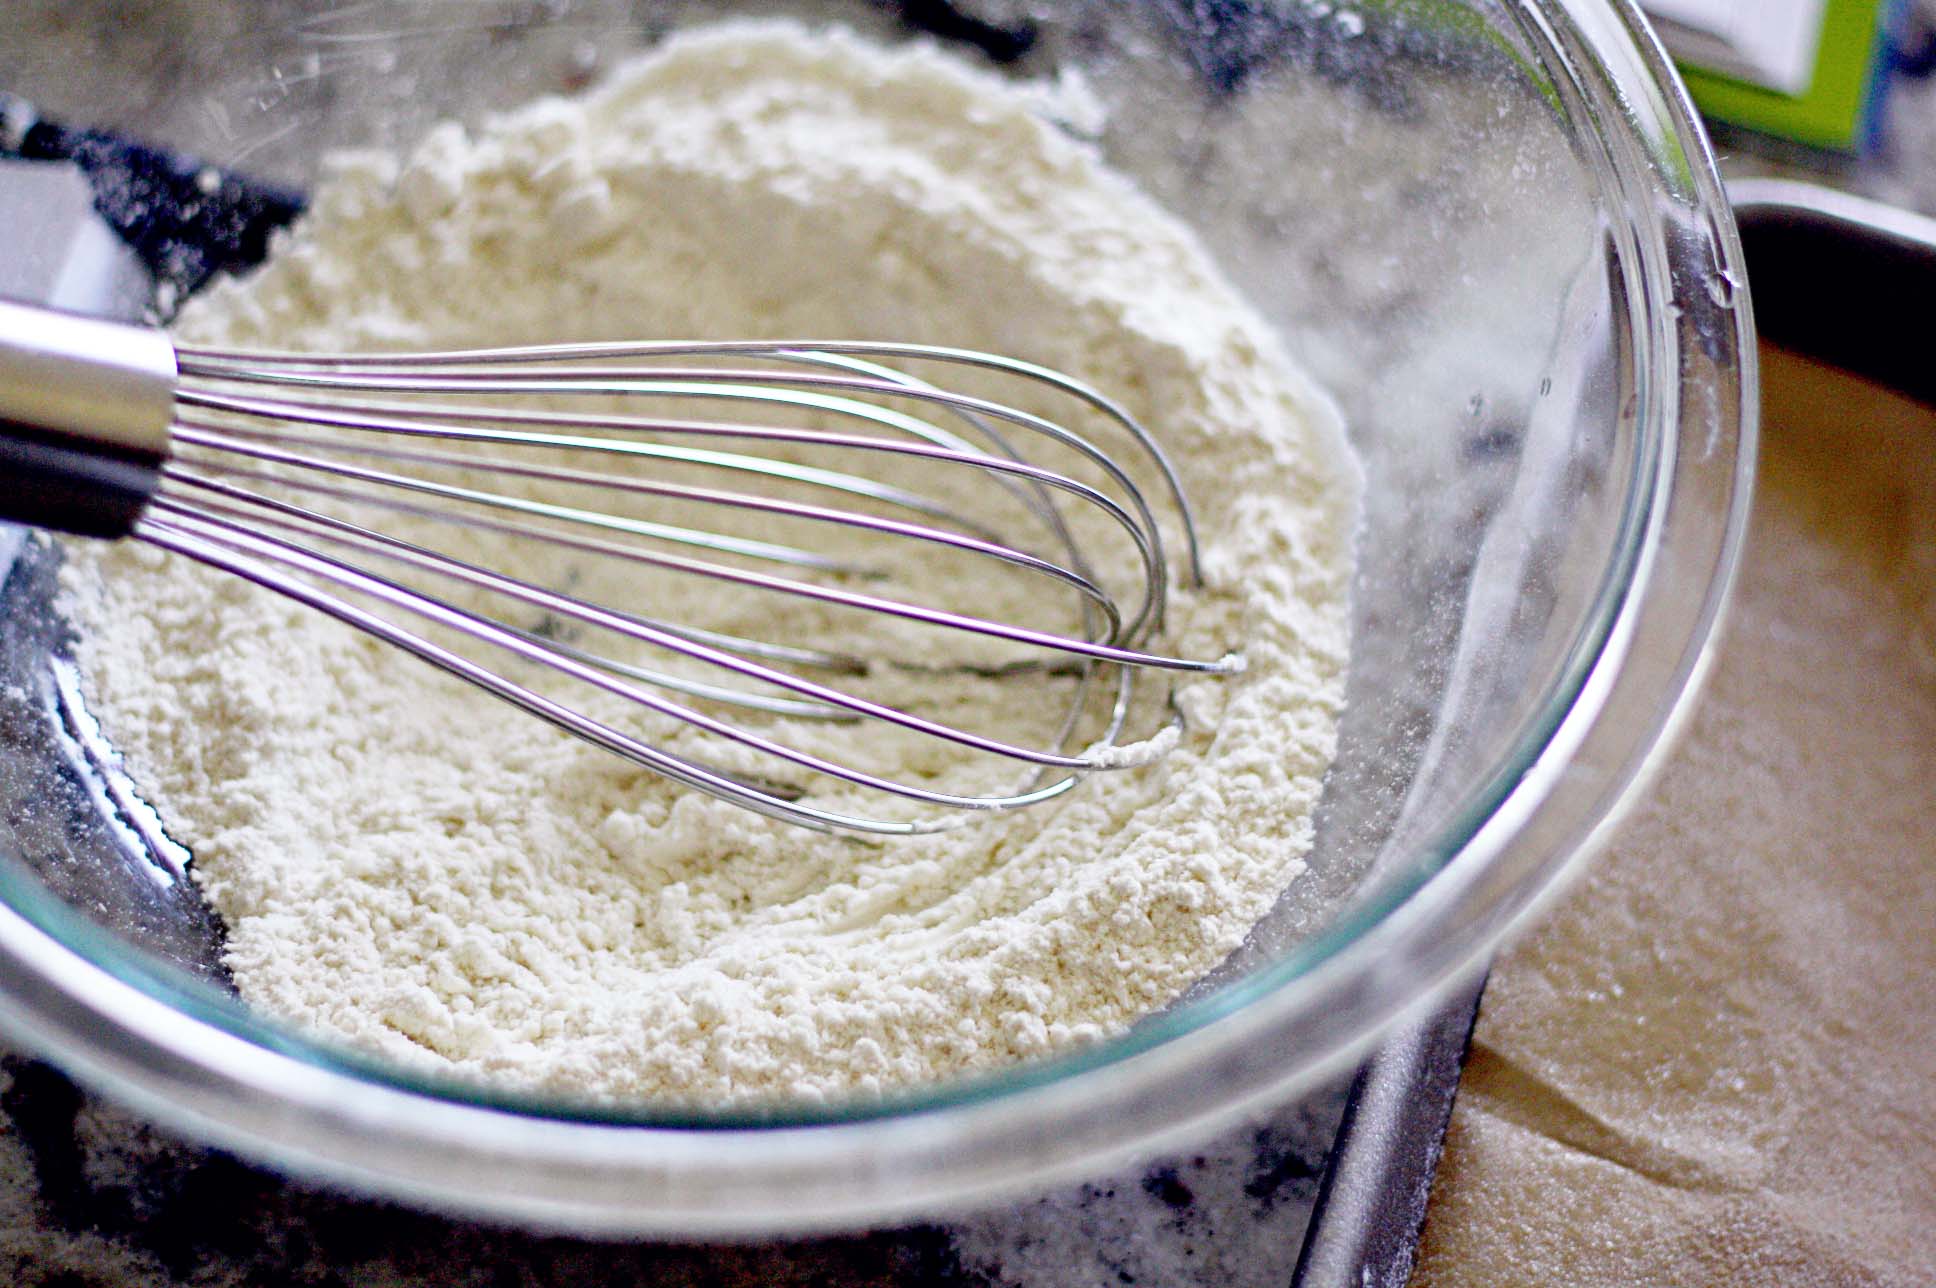 Baking flour